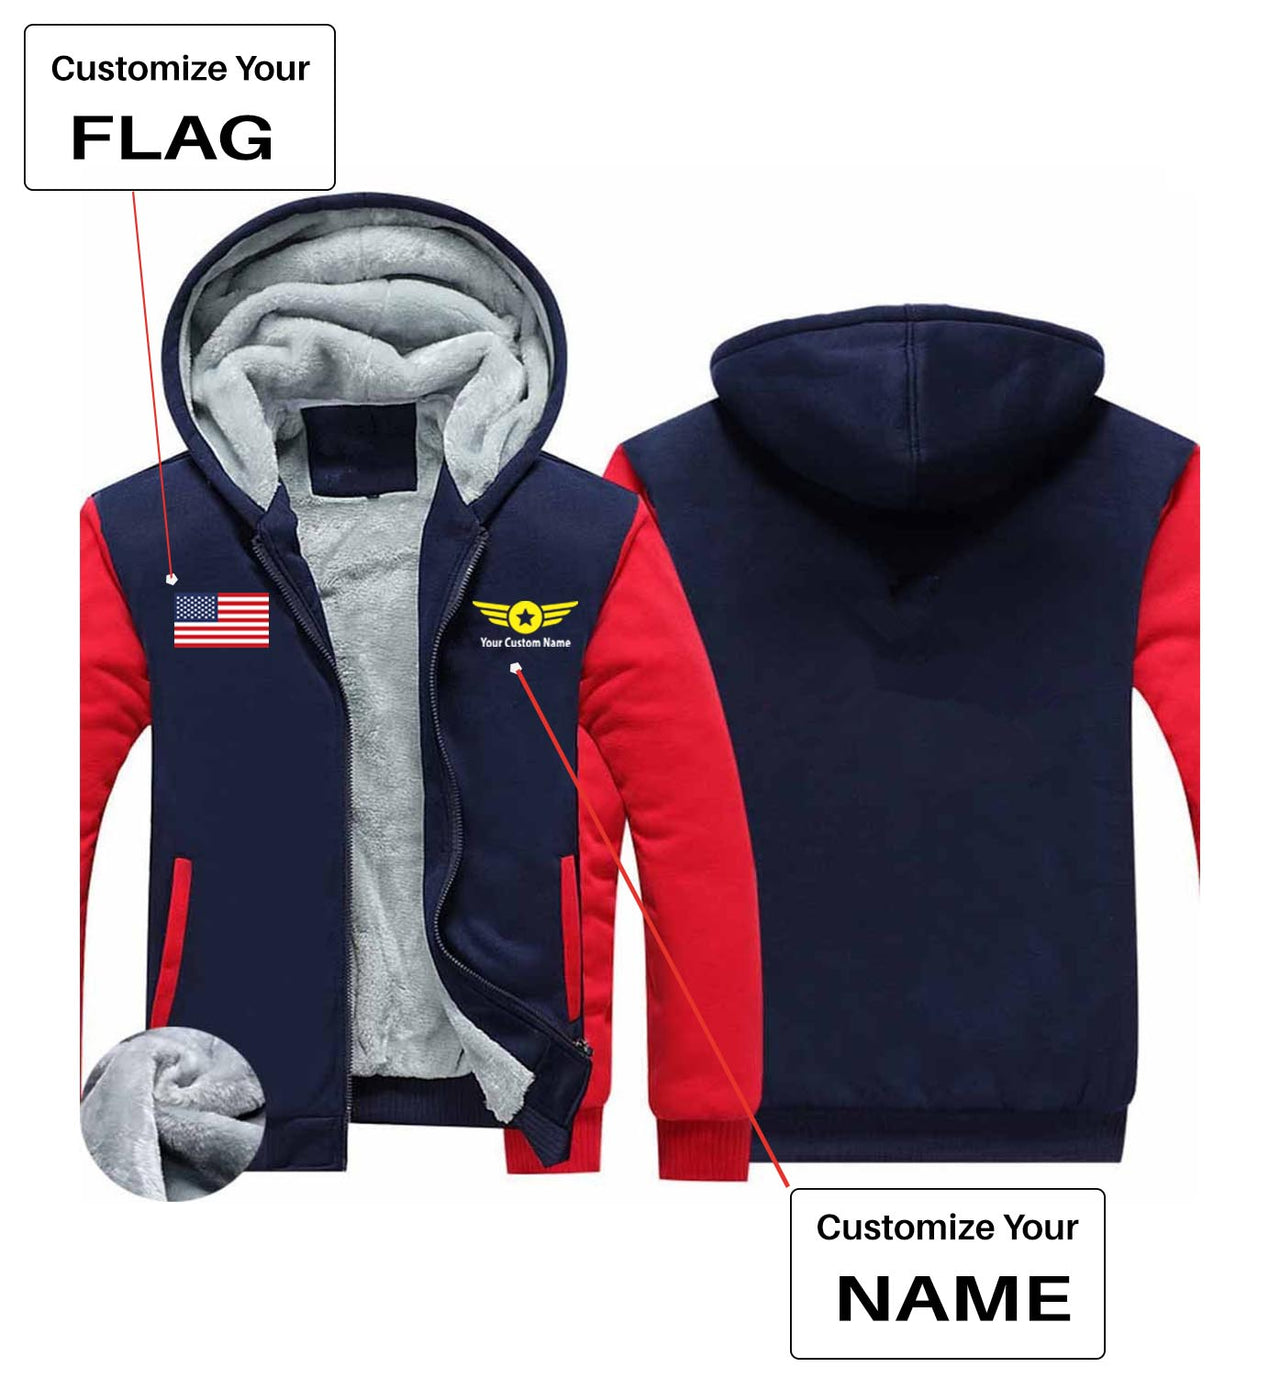 Your Custom Name & Flag (Badge 4) Designed Zipped Sweatshirts